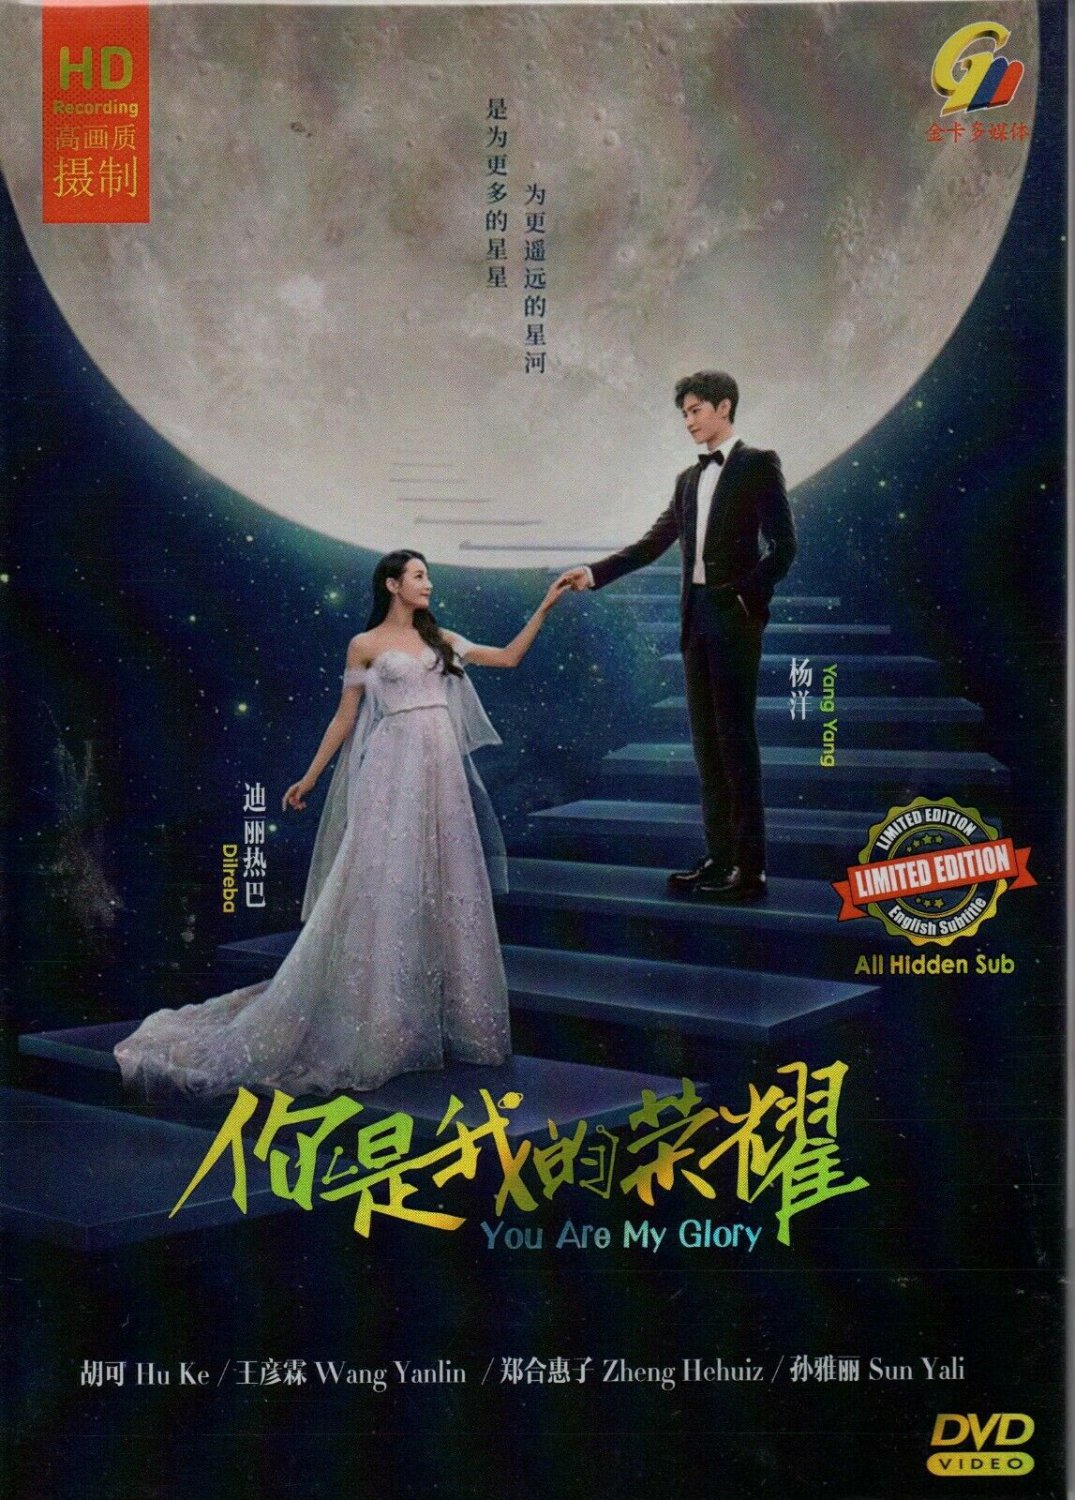 Chinese Drama HD DVD You Are My Glory ä½ æ�¯æ��ç��è�£è�� (2021) English Subtitle